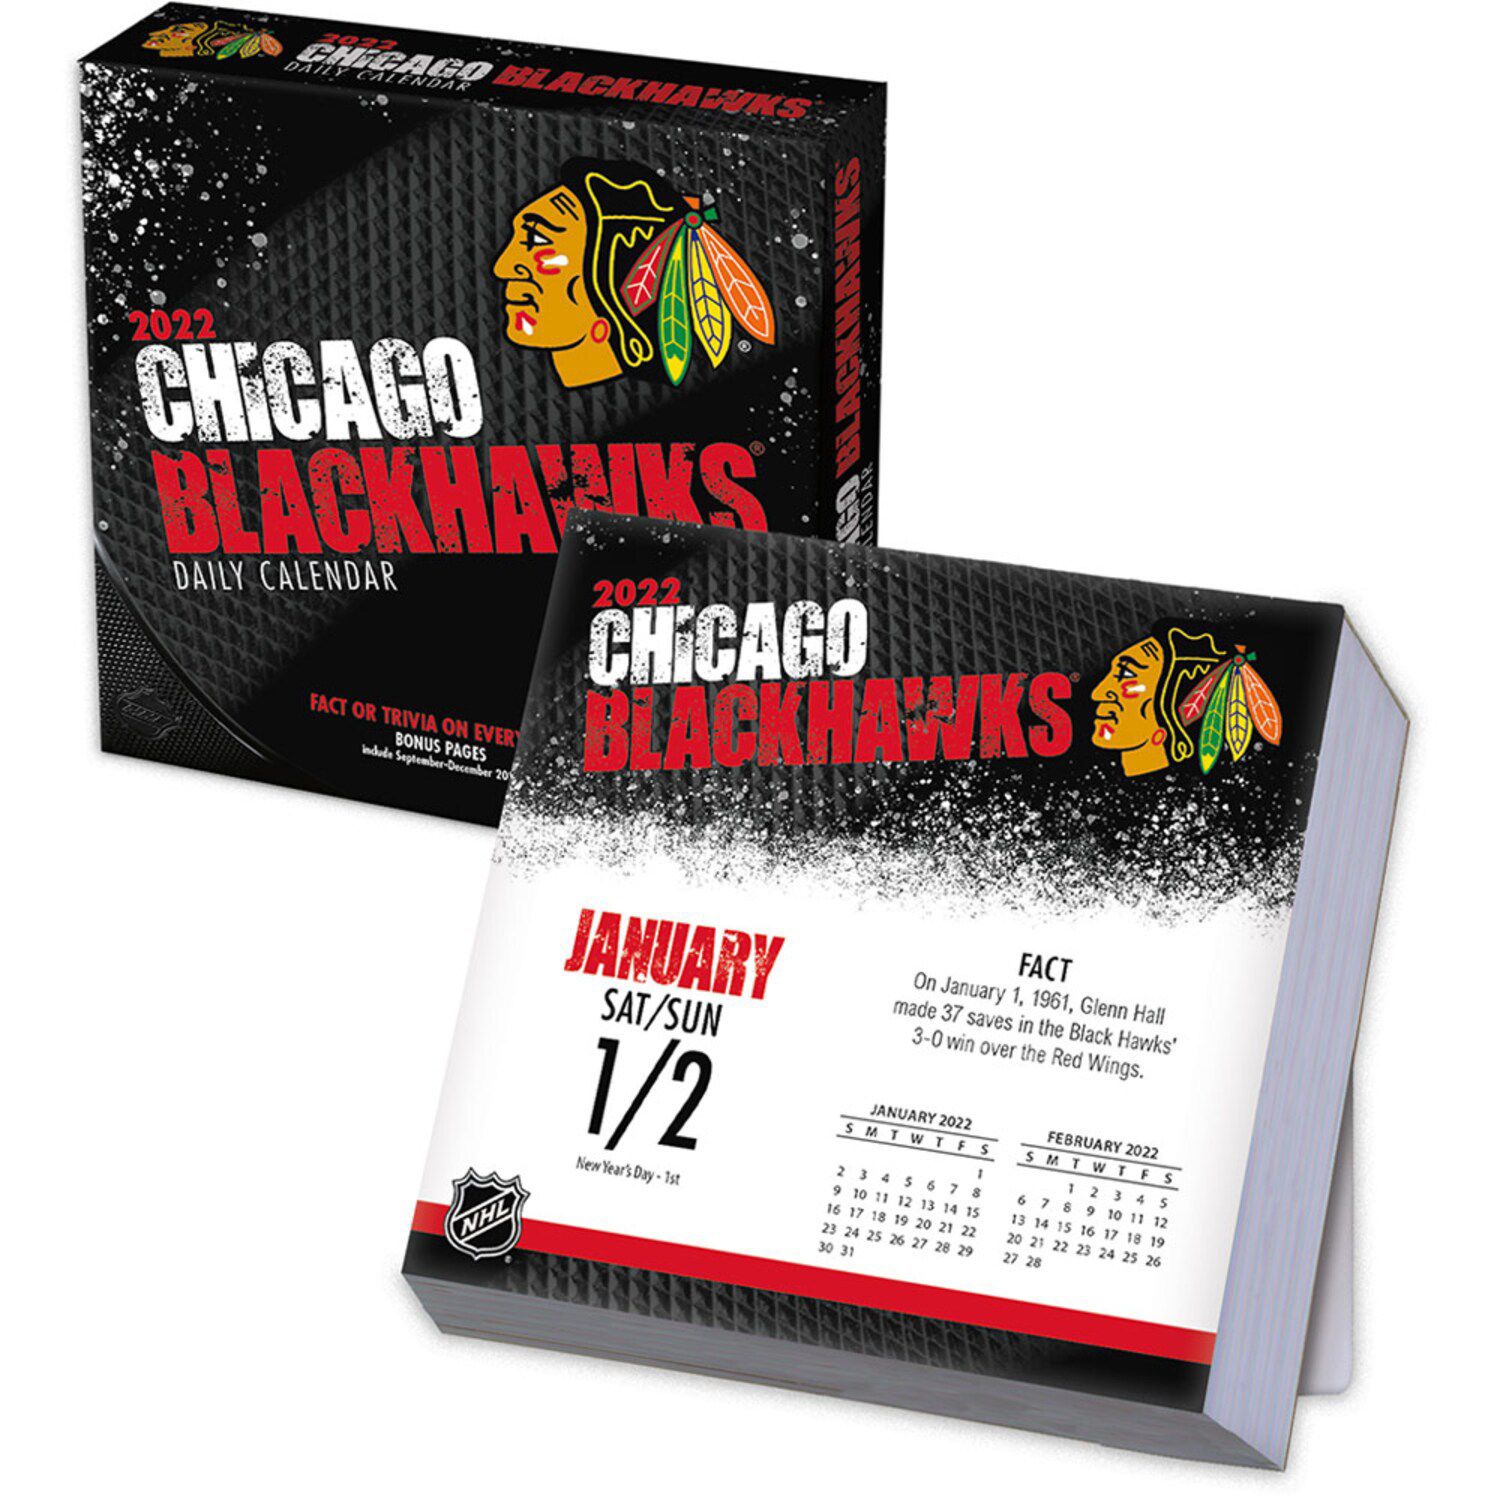 Image for Unbranded Chicago Blackhawks 2022 Box Calendar at Kohl's.